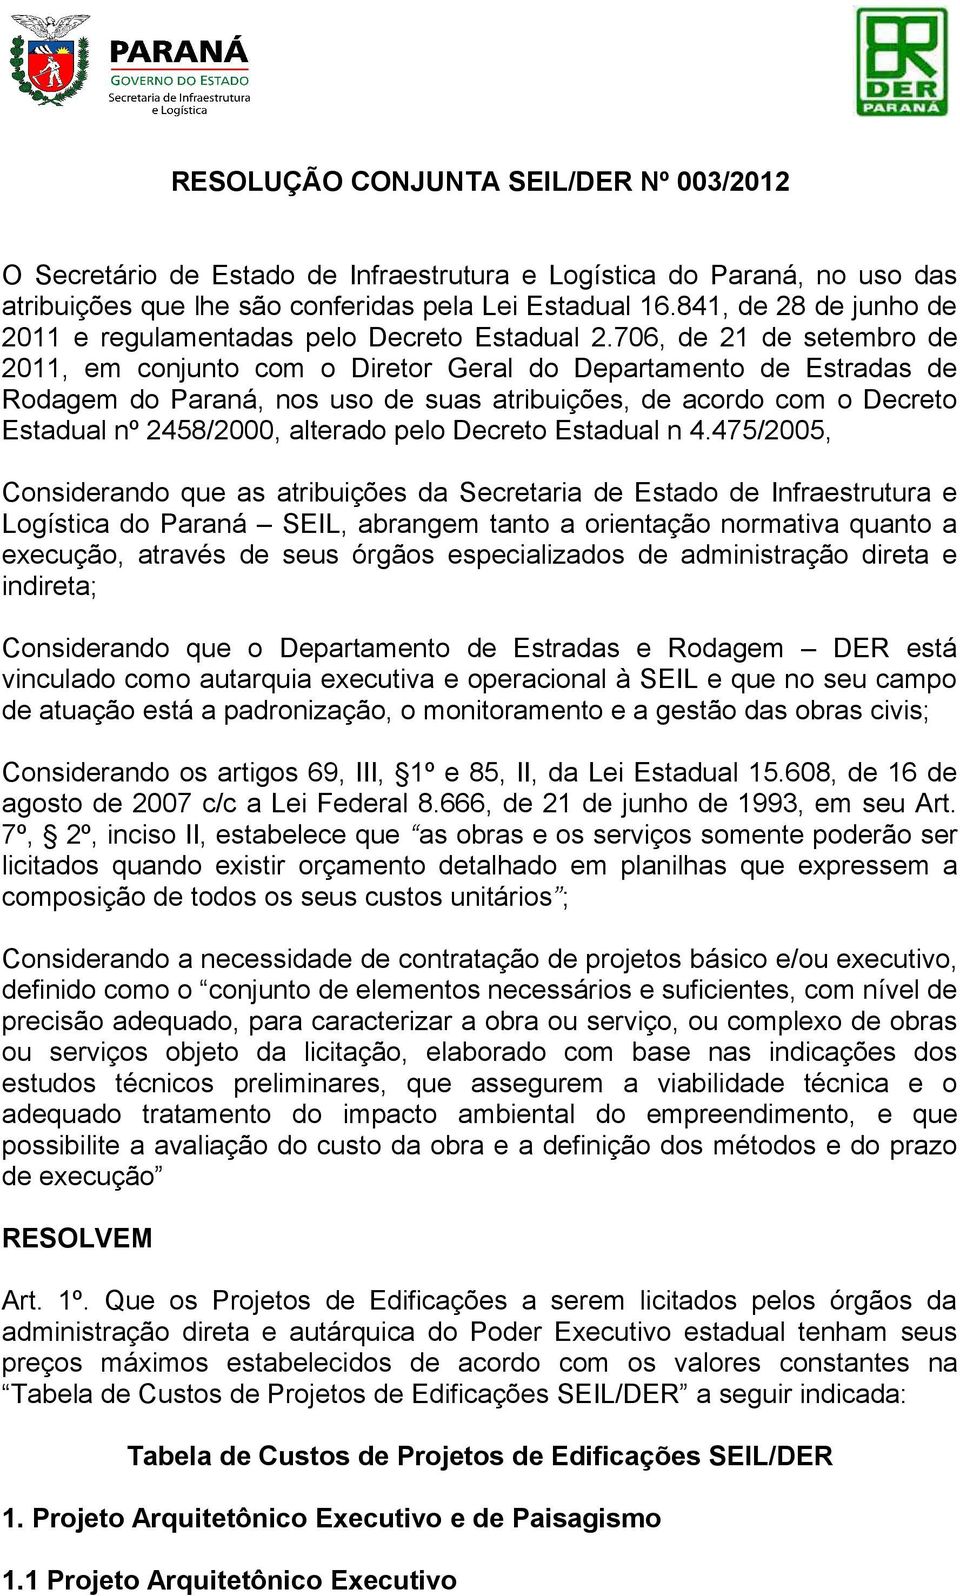 706, de 21 de setembro de 2011, em conjunto com o Diretor Geral do Departamento de Estradas de Rodagem do Paraná, nos uso de suas atribuições, de acordo com o Decreto Estadual nº 2458/2000, alterado